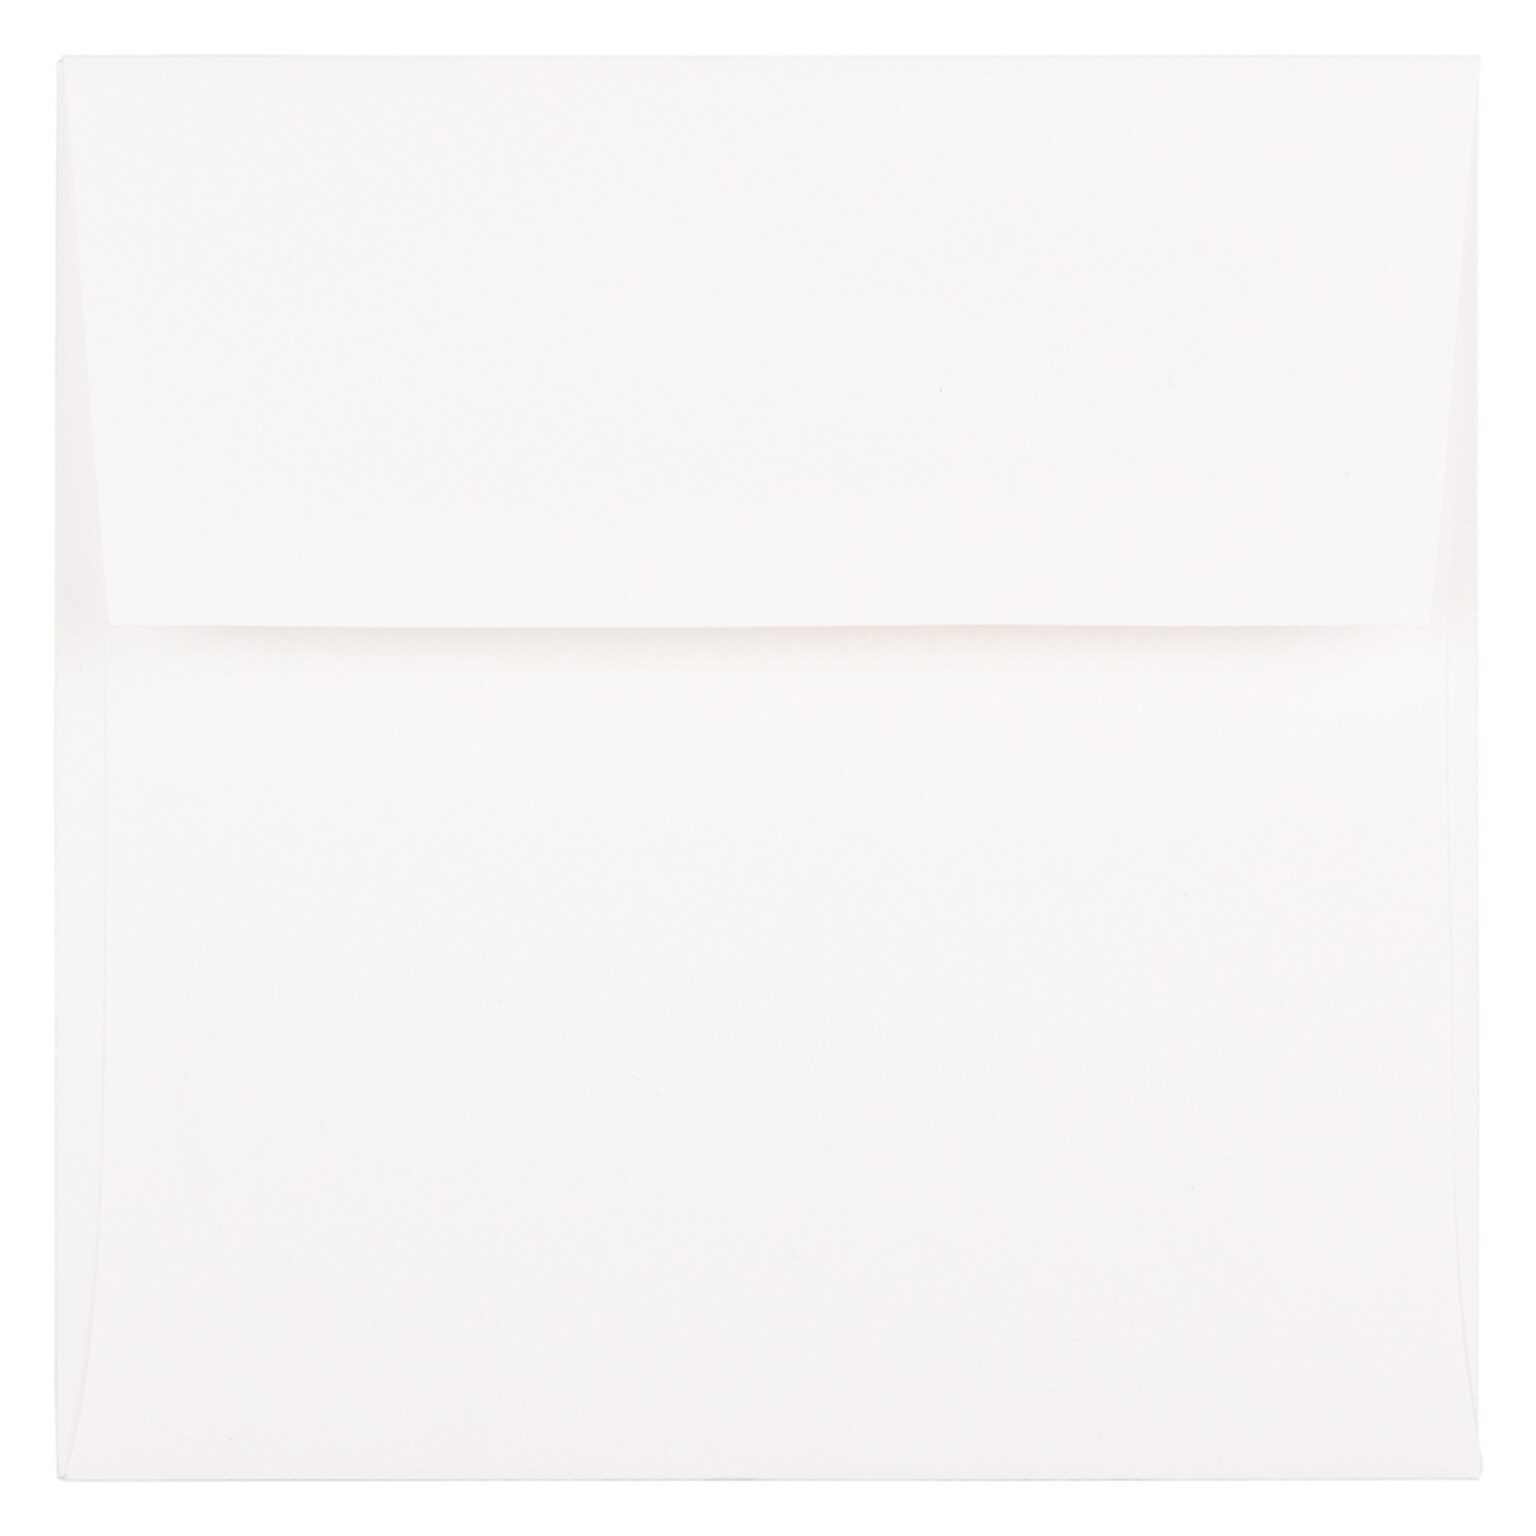 JAM Paper 5.5 x 5.5 Square Invitation Envelopes, White Semi Gloss, 25/Pack (2792259)